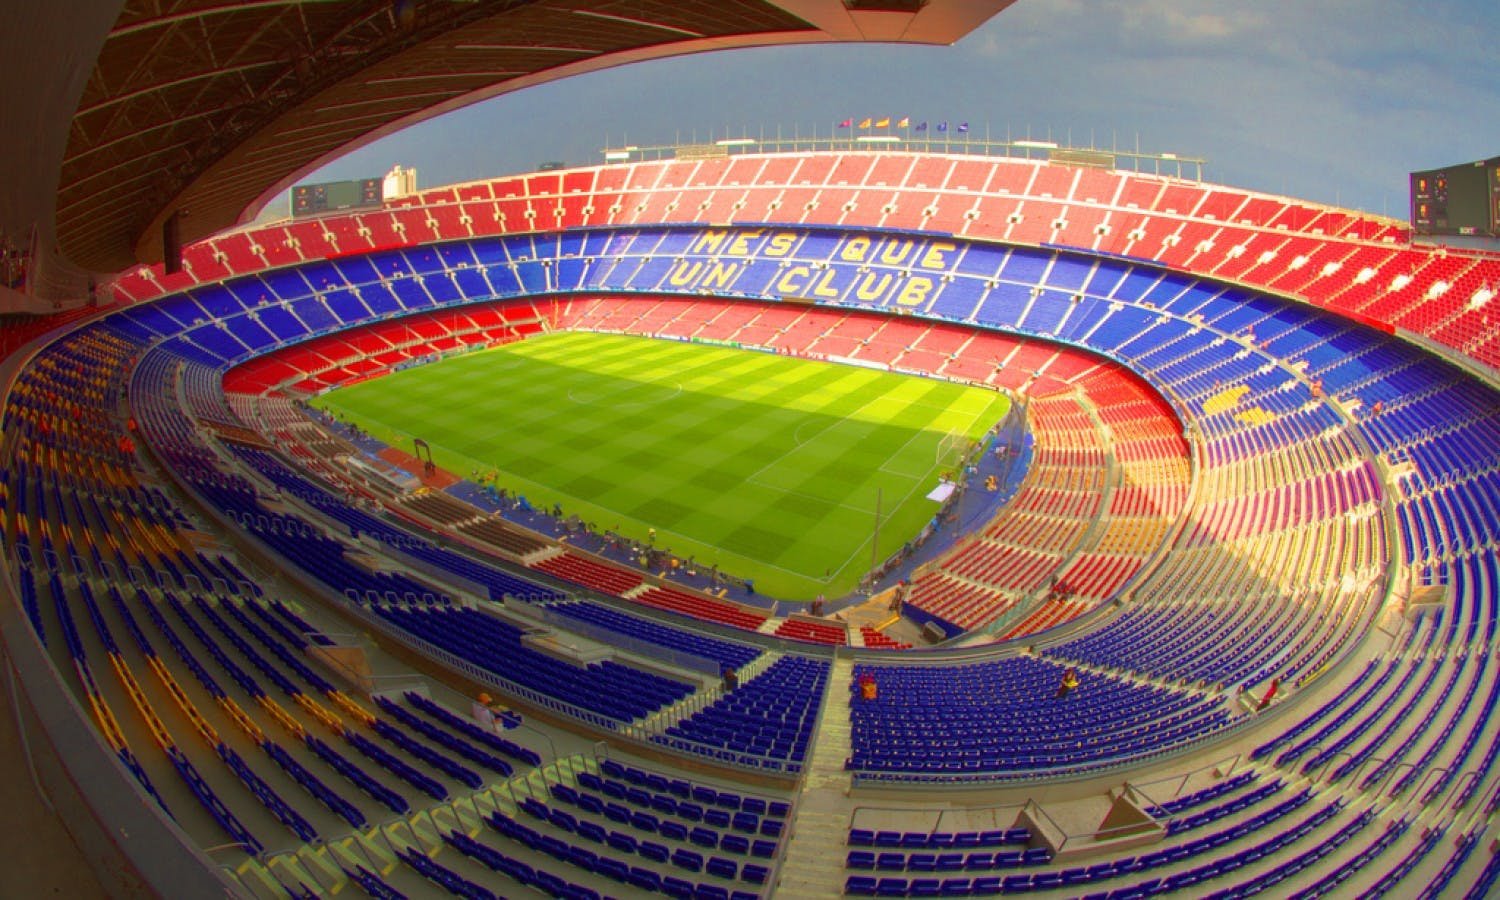 Камп нов. Стадион Камп ноу в Барселоне. Стадион Camp nou. Стадион Camp nou FC Barcelona. Реконструкция стадиона Камп ноу в Барселоне.